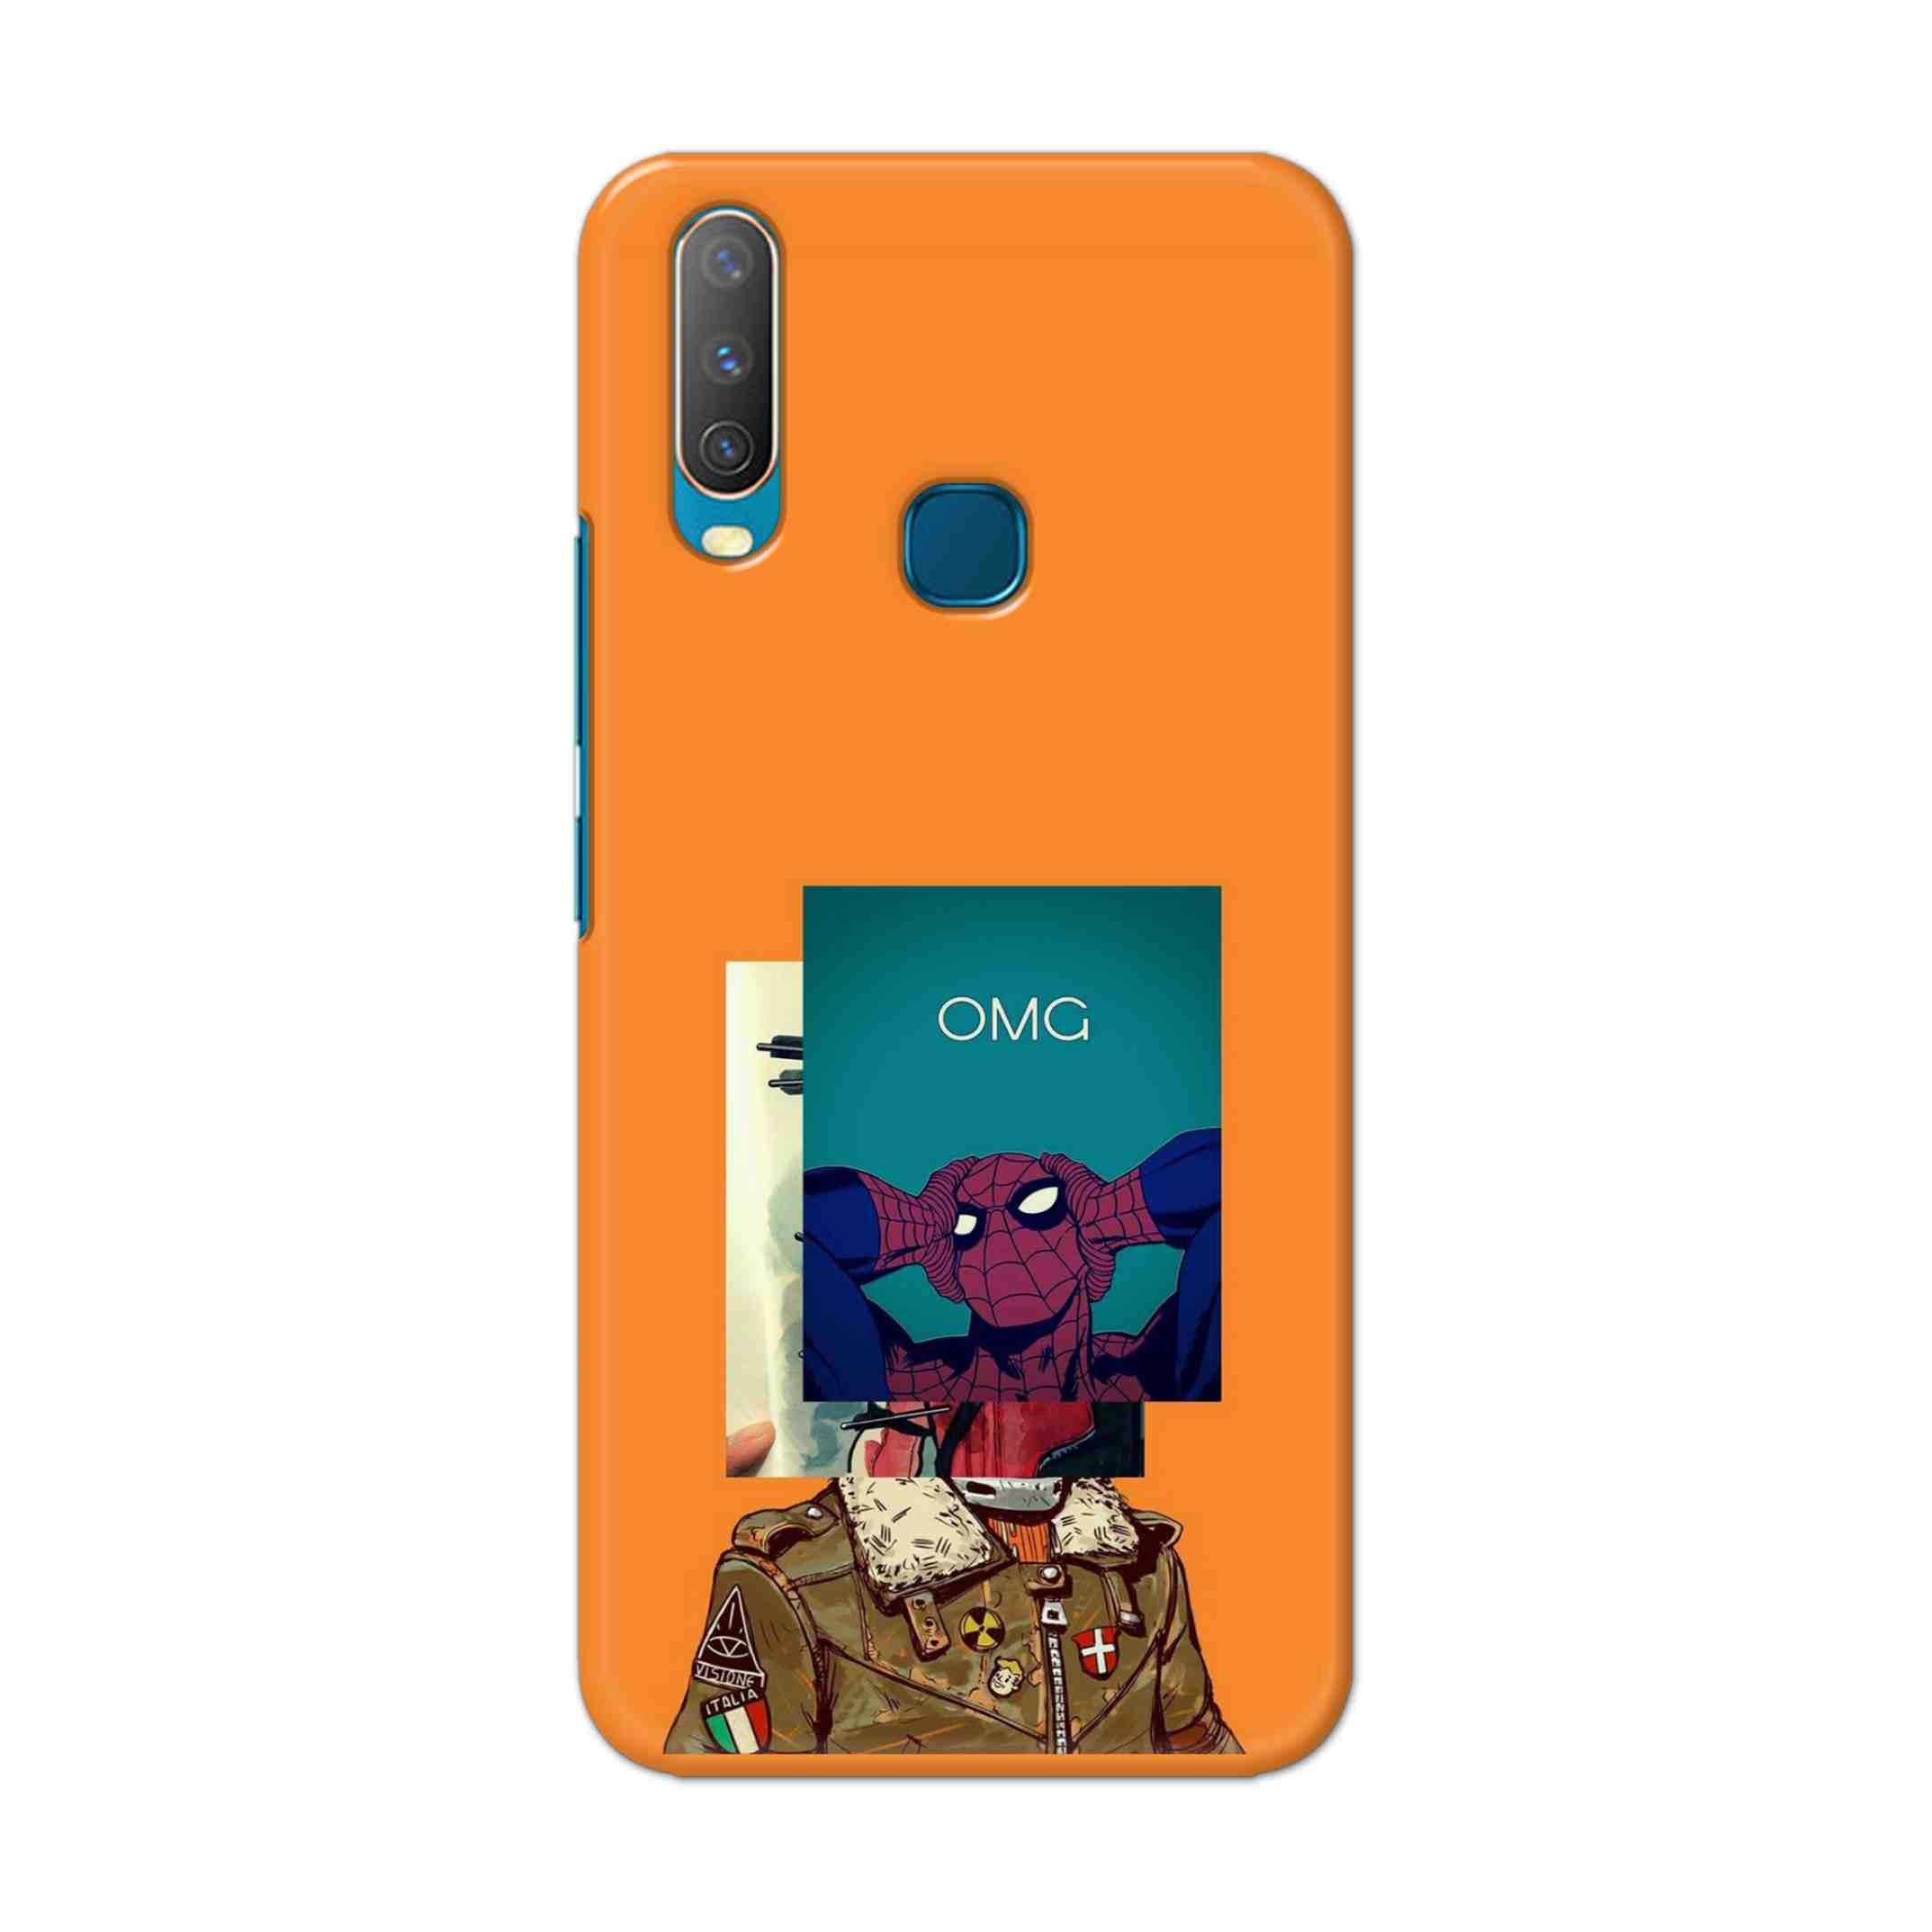 Buy Omg Spiderman Hard Back Mobile Phone Case Cover For Vivo Y17 / U10 Online